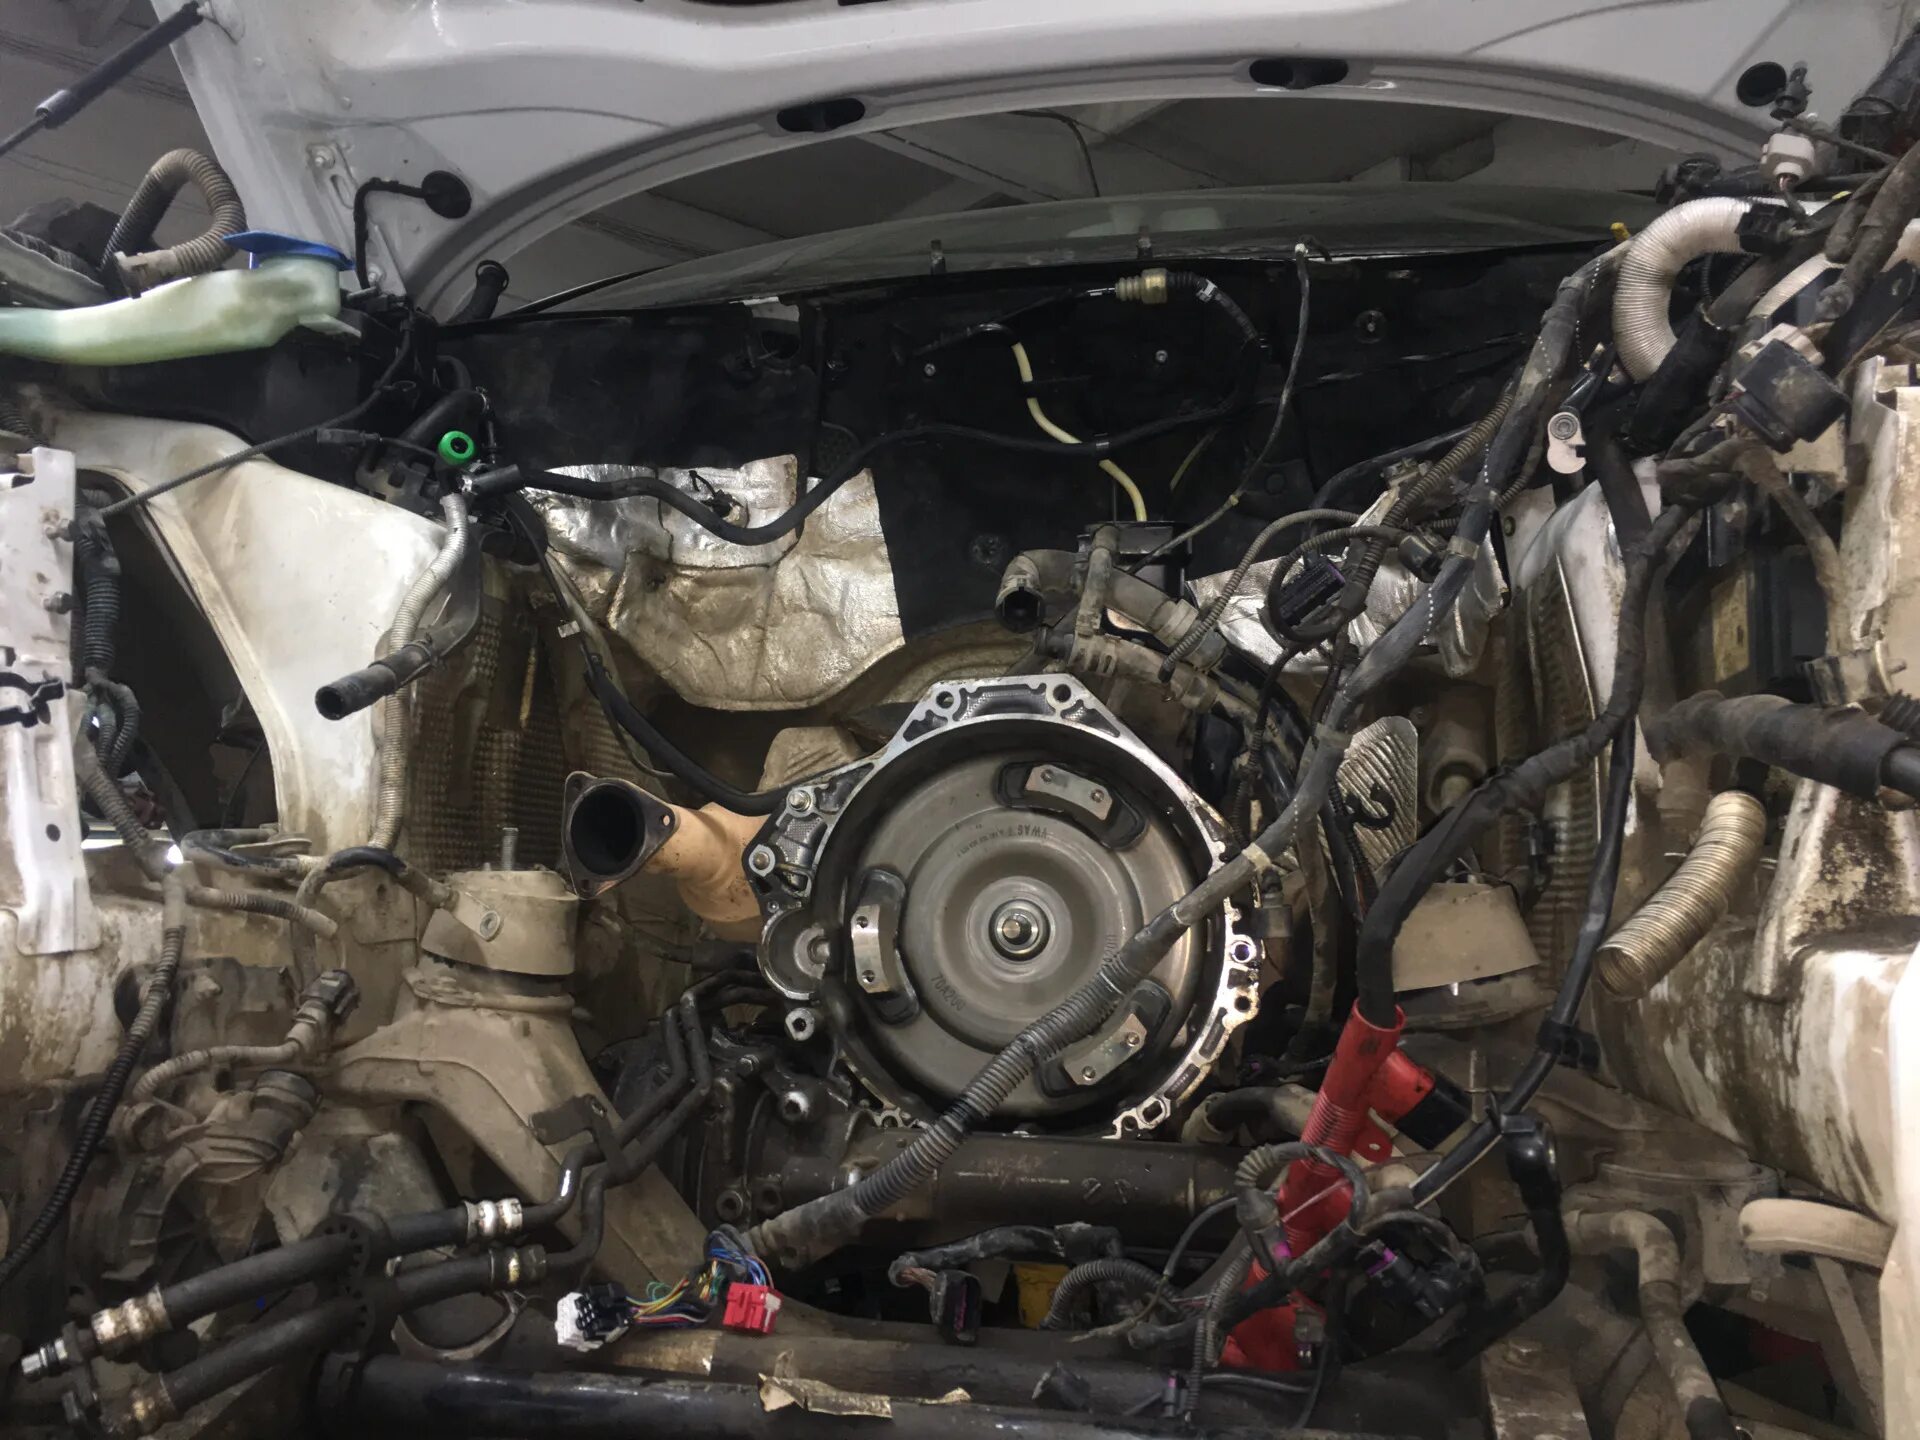 Ремкомплект двигателя Ауди q7. Audi q7 ремонт. Ремонт двигателя Ауди. Ауди ку7 ремонт двигателя.